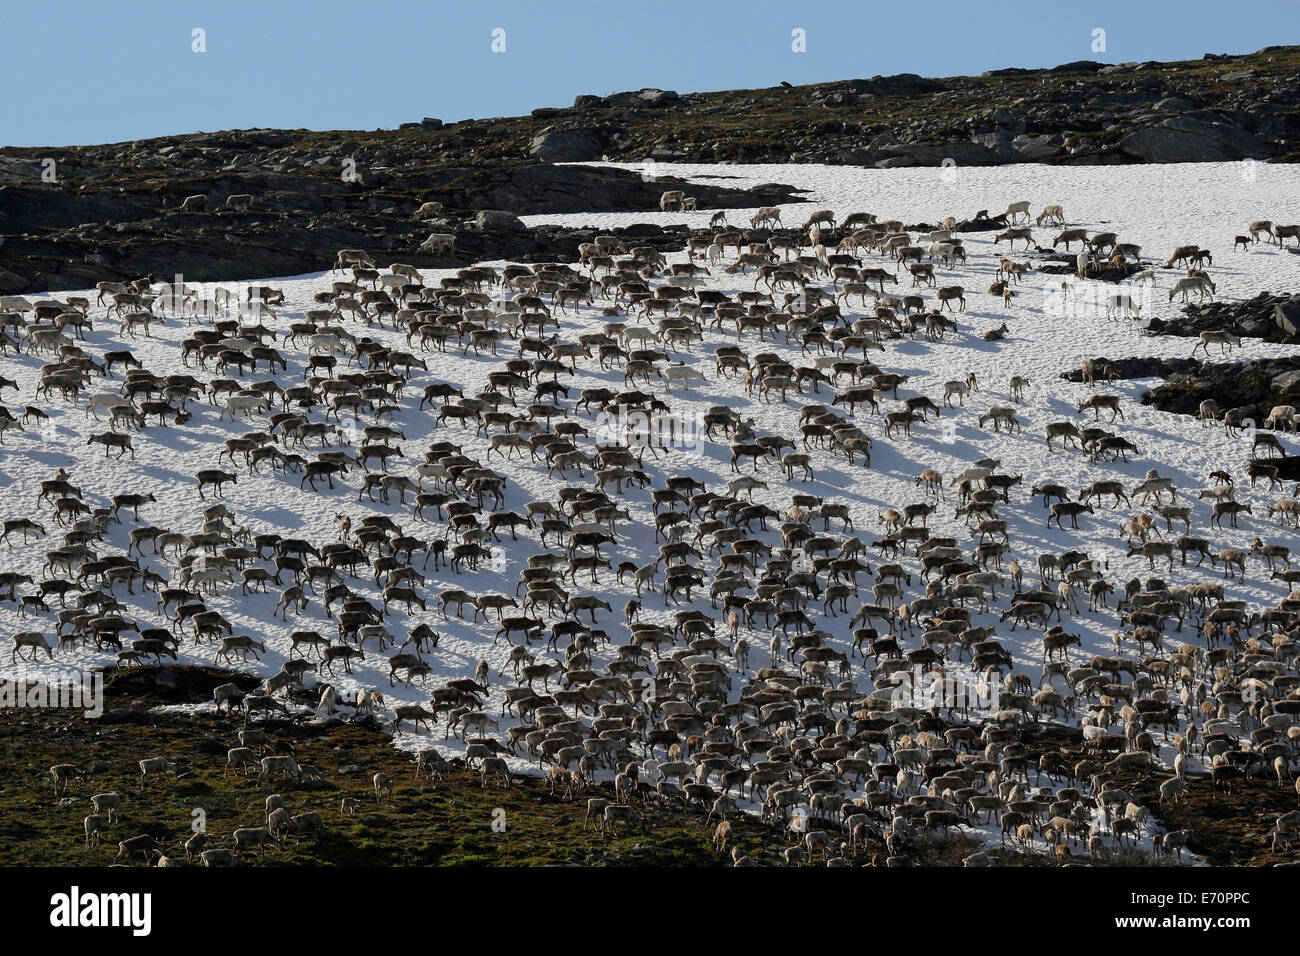 Reindeer (Rangifer tarandus) crossing a snowfield, North Norway, Norway Stock Photo